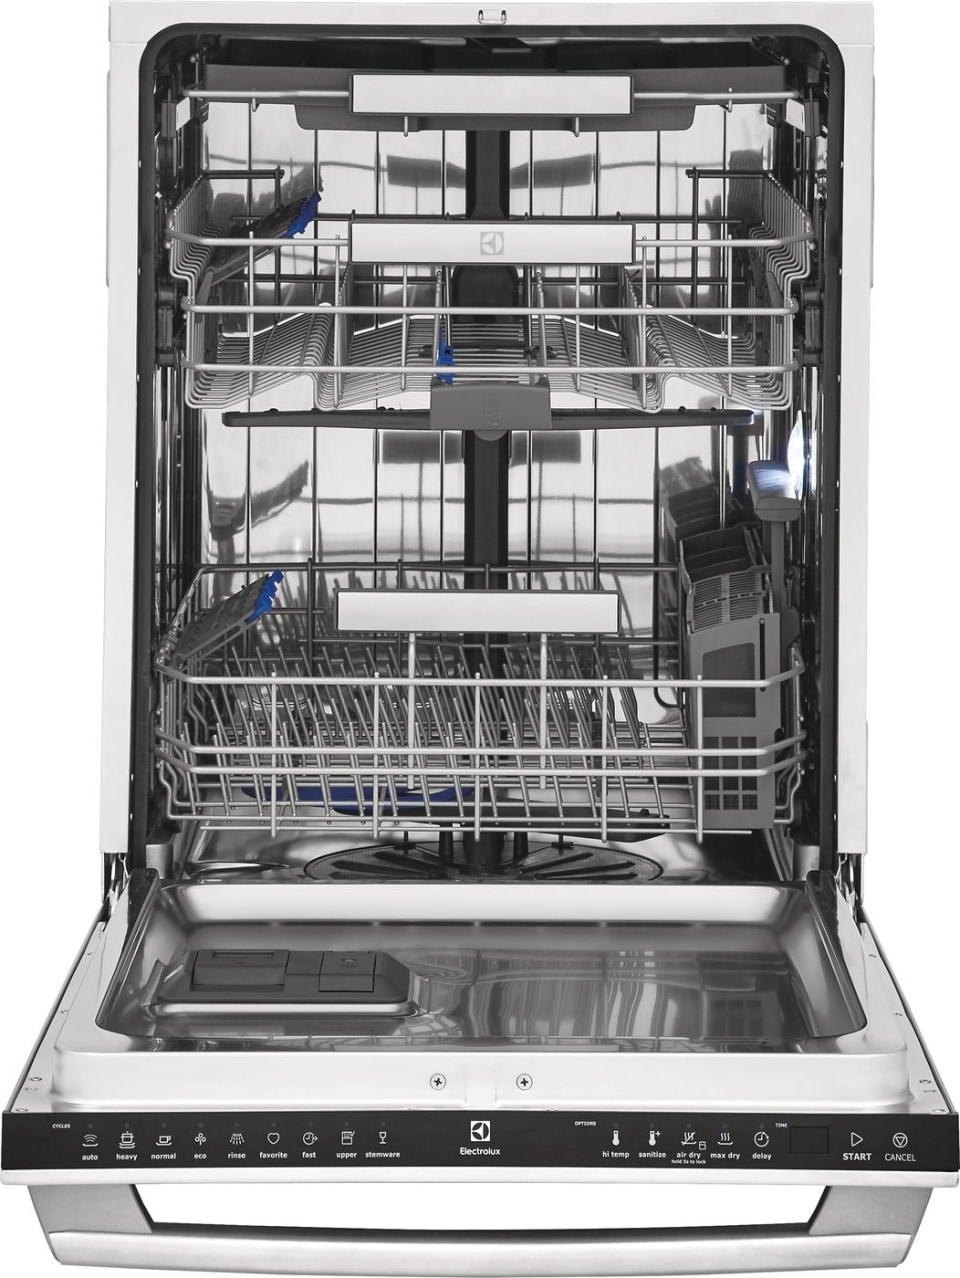 Посудомоечные машинки 45. Посудомоечная машина Electrolux 45 см. Электролюкс посудомойка 45 встраиваемая. ПММ Электролюкс 45 встраиваемая. Электролюкс посудомоечная машина 45 см.